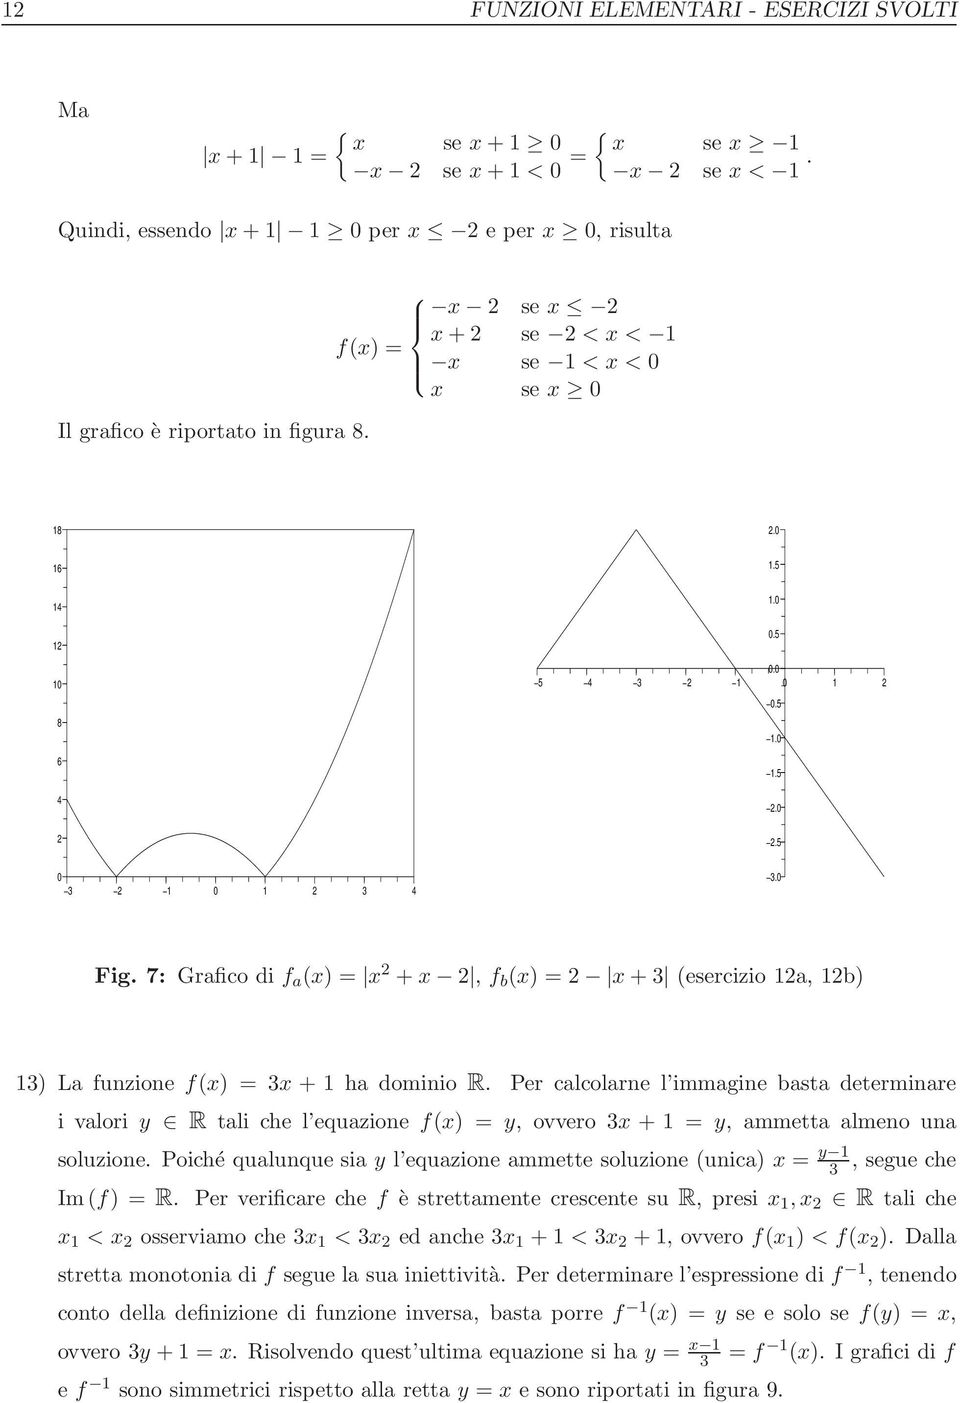 7: Grafico di f a (x) = x + x, f b (x) = x + 3 (esercizio 1a, 1b) 13) La funzione f(x) = 3x + 1 ha dominio R.